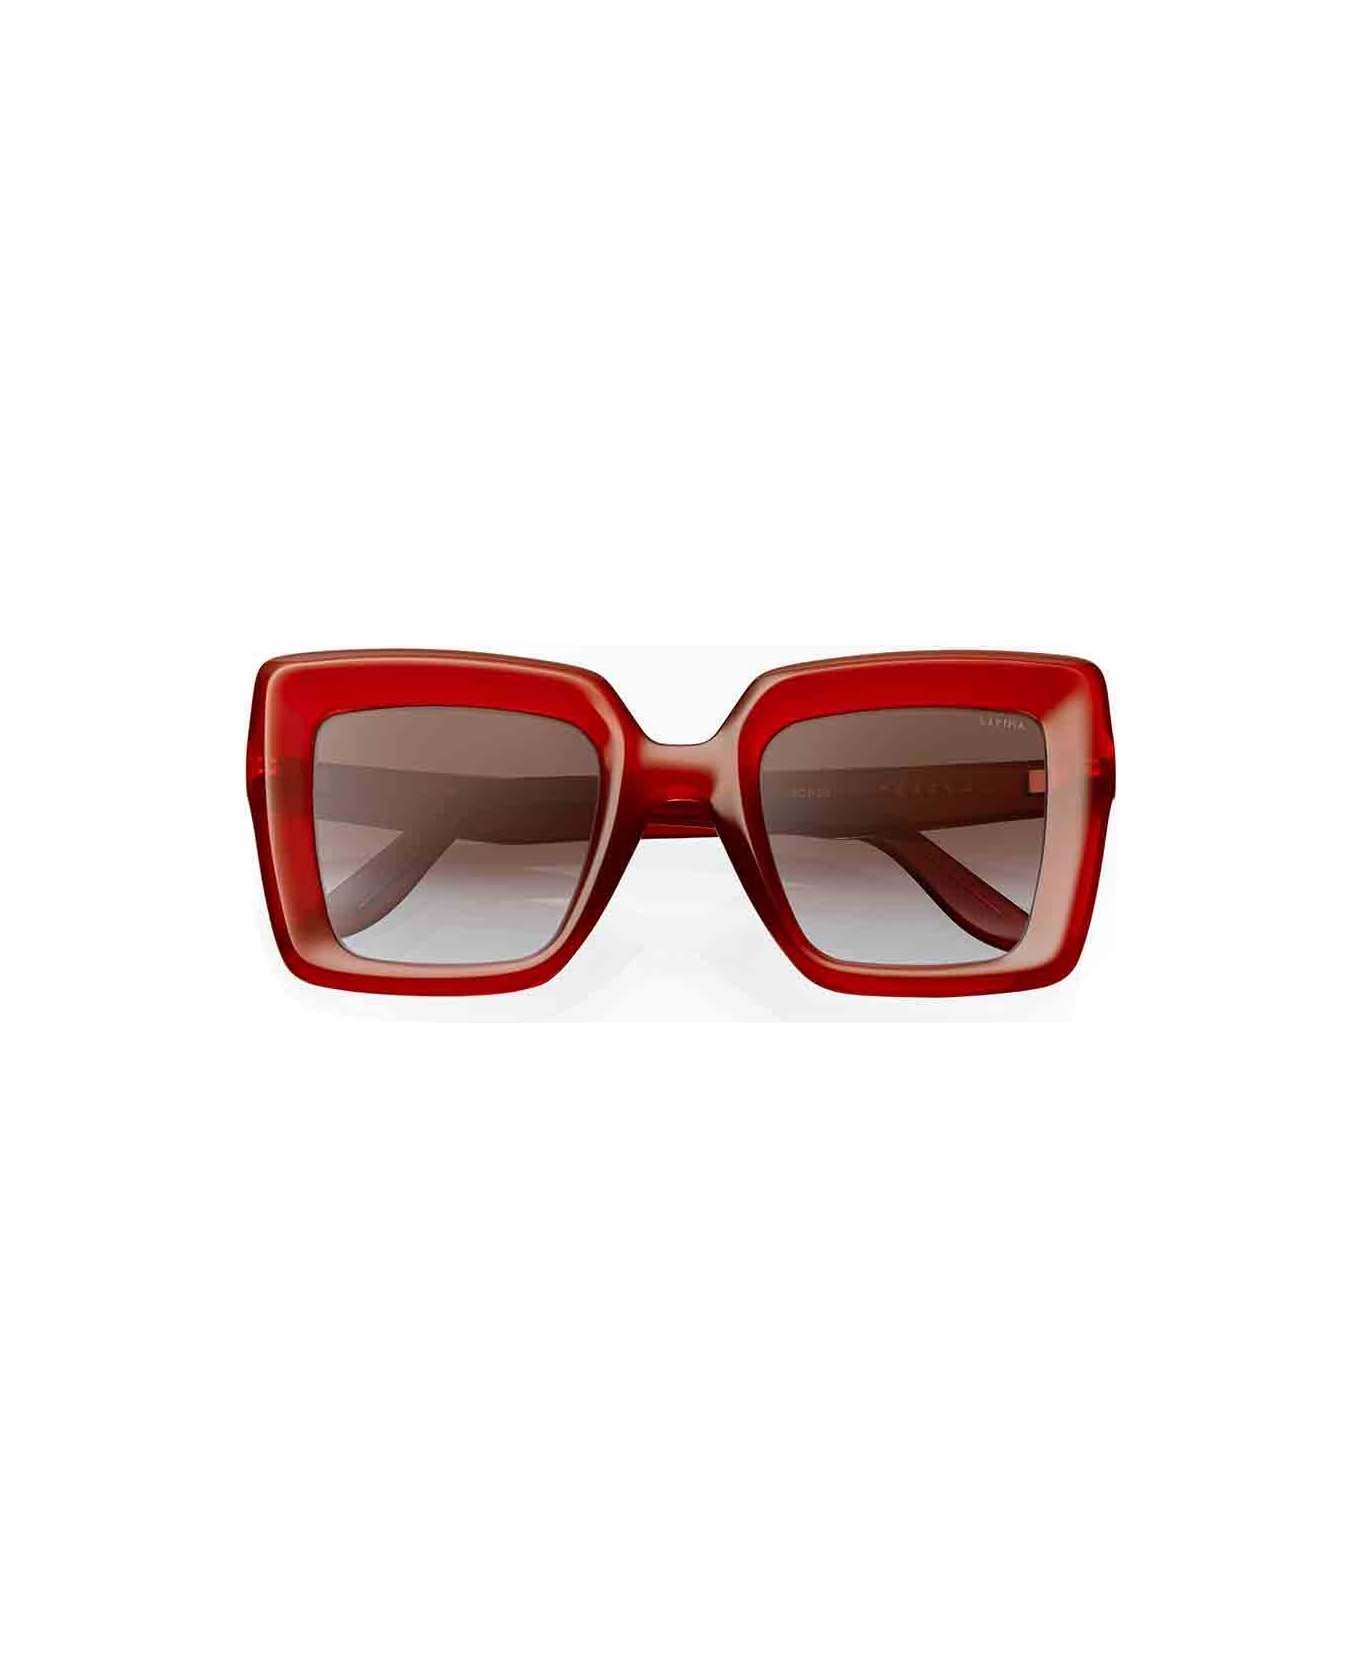 Lapima Eyewear - Rosso/Marrone アイウェア